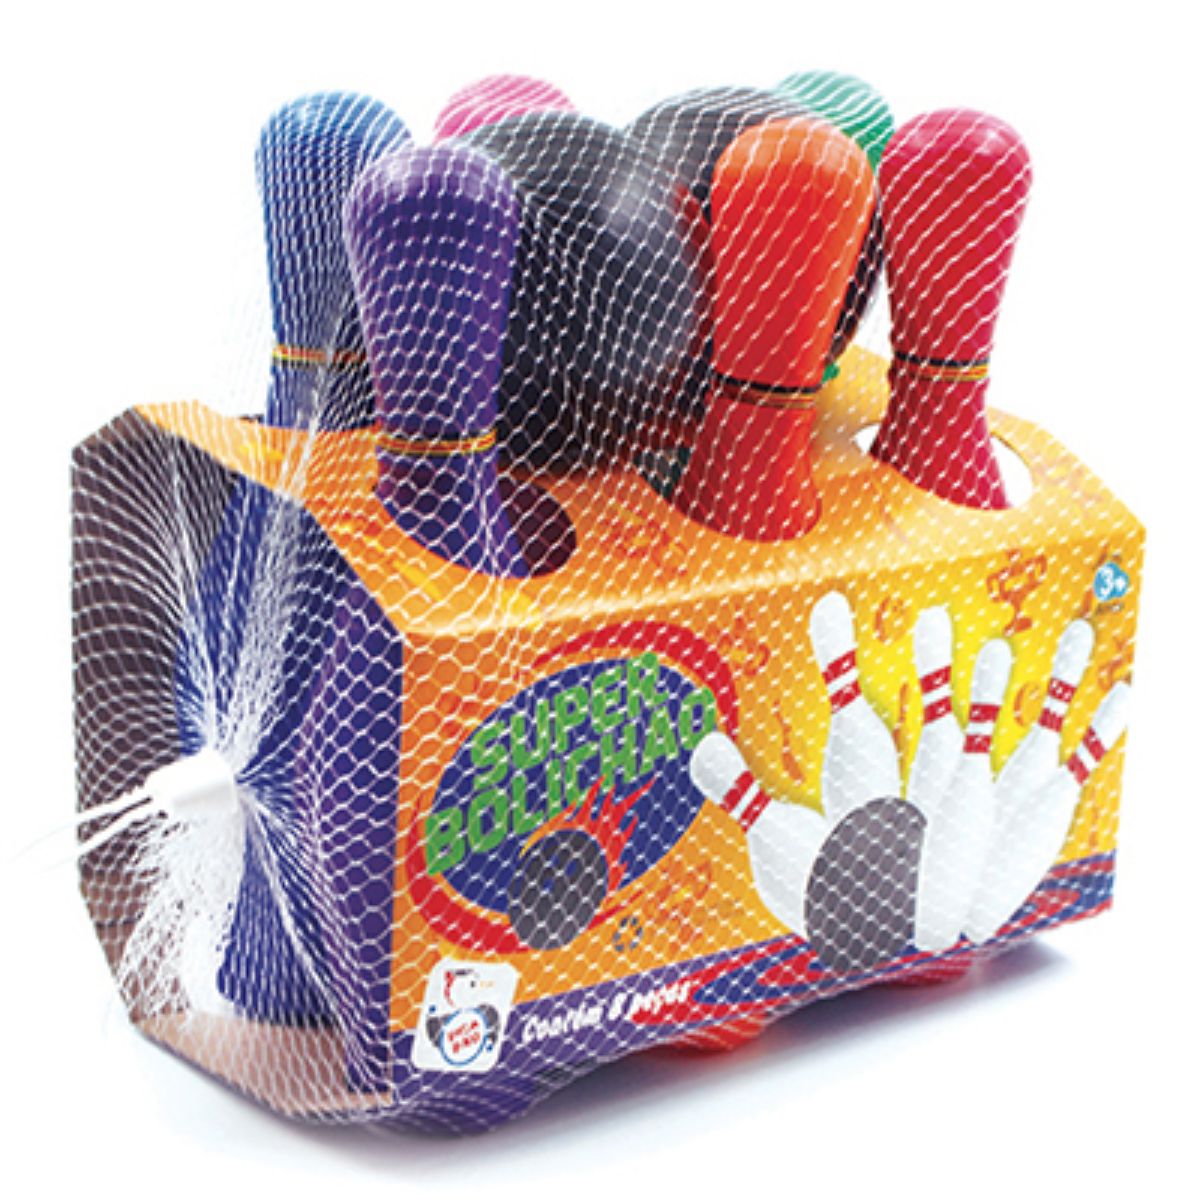 Jogo Boliche Gigante 6 Pinos completo - Lider Brinquedos - Tem Tem Digital  - Brinquedos e Papelaria, aqui tem!